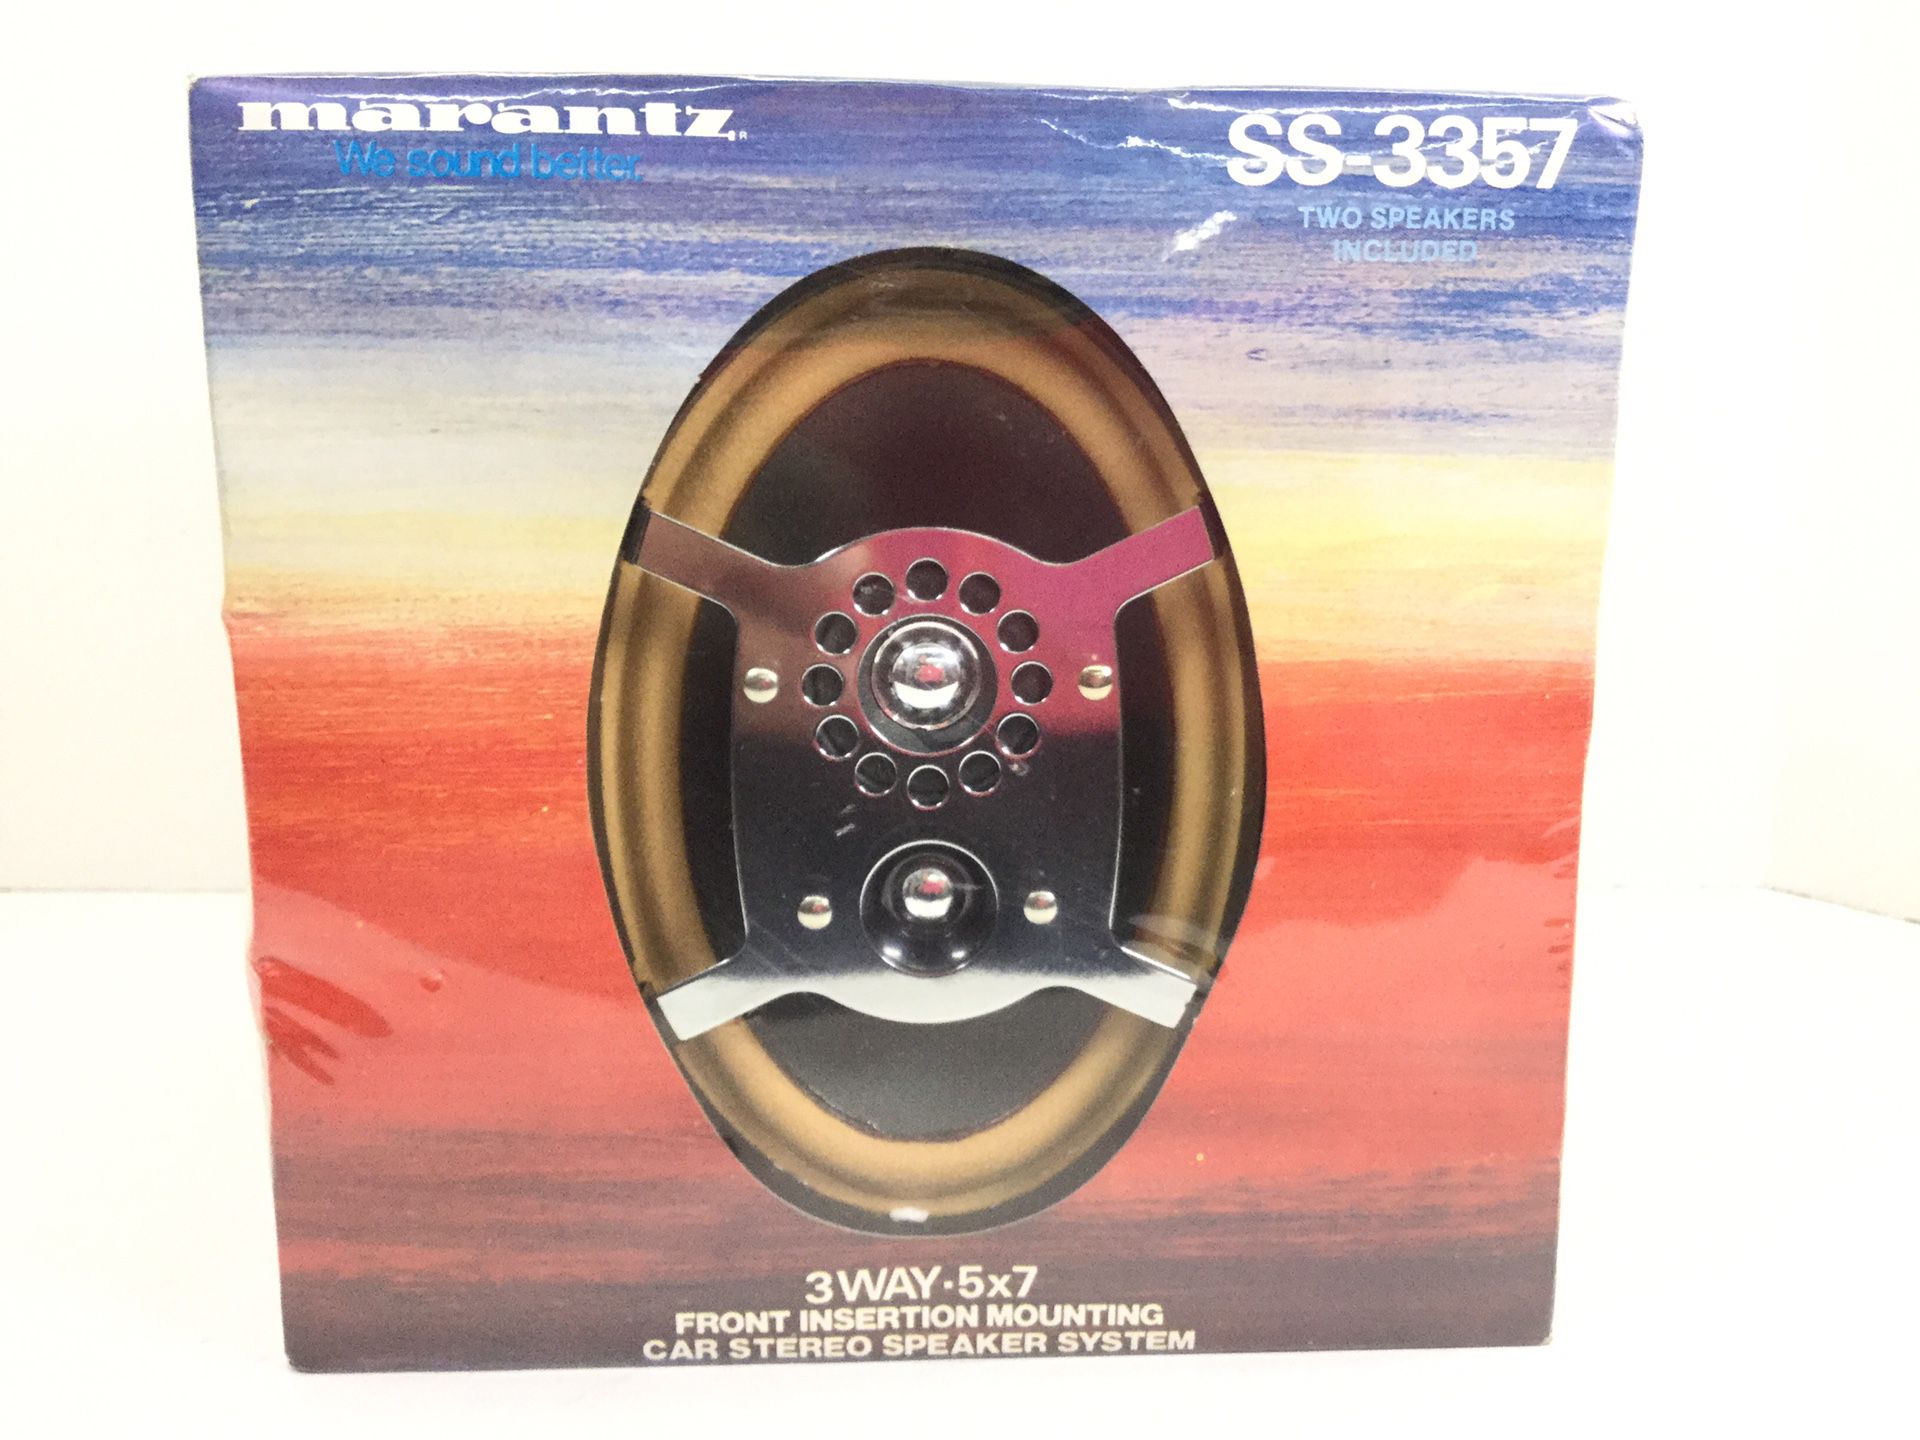 *NEW* Marantz Car Stereo Speaker System